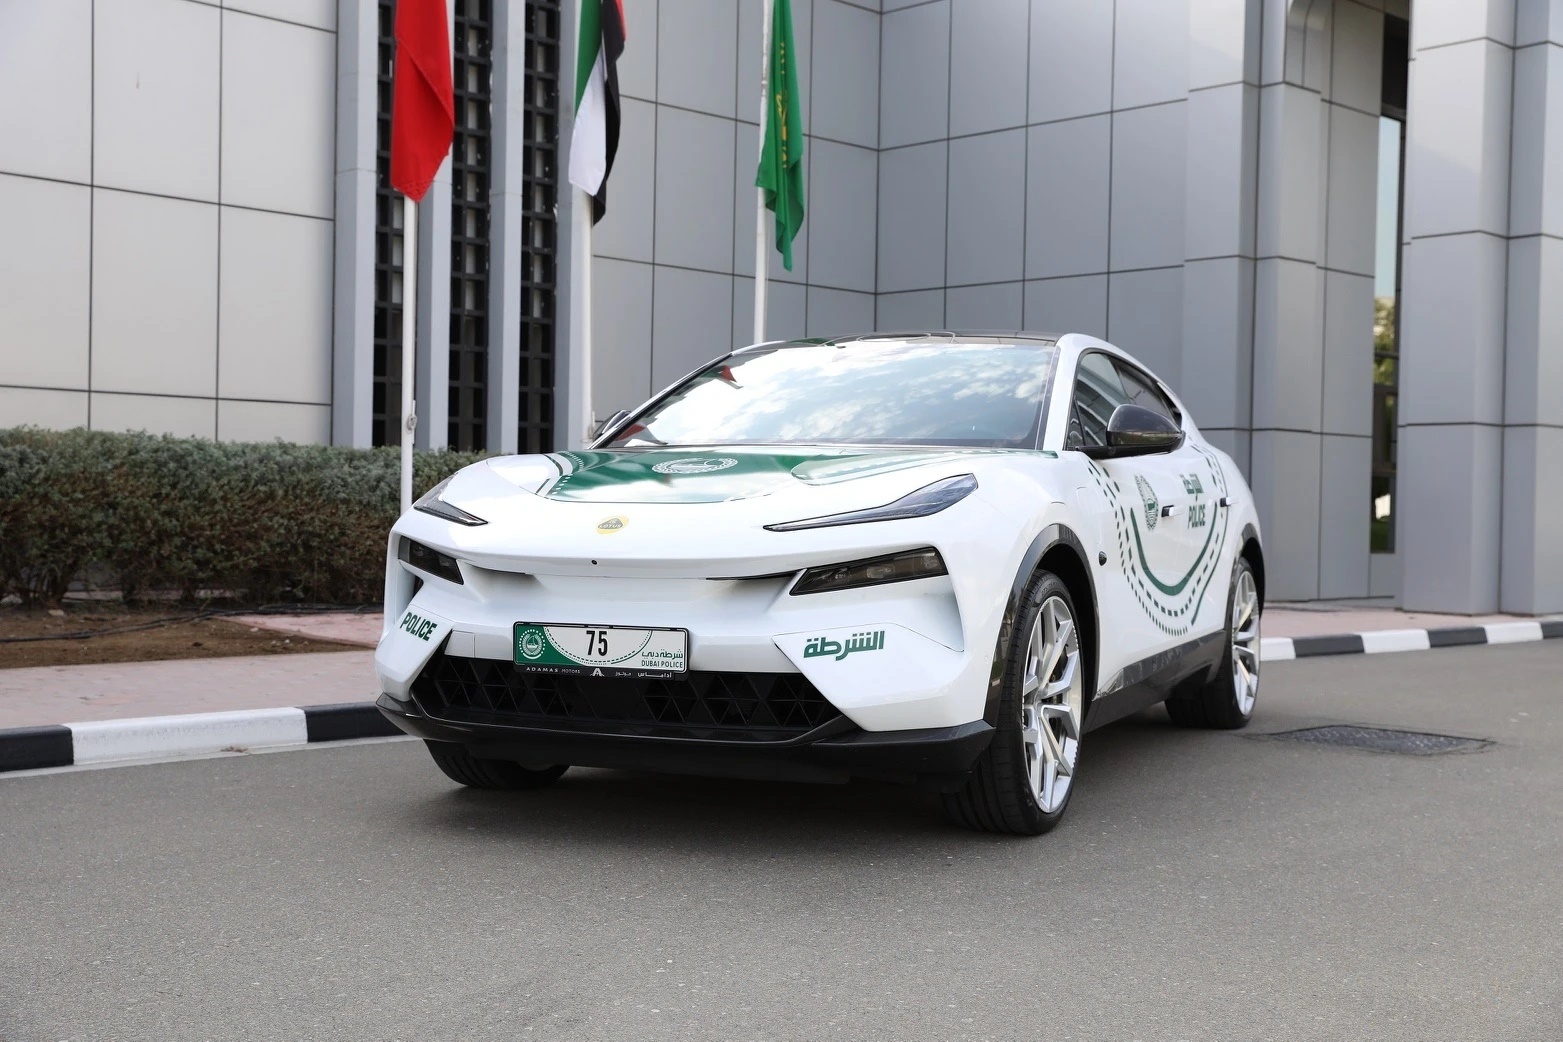 Siêu xe cảnh sát Dubai, Xe thể thao hybrid, Phương tiện giao thông xanh, Siêu xe điện cho cảnh sát